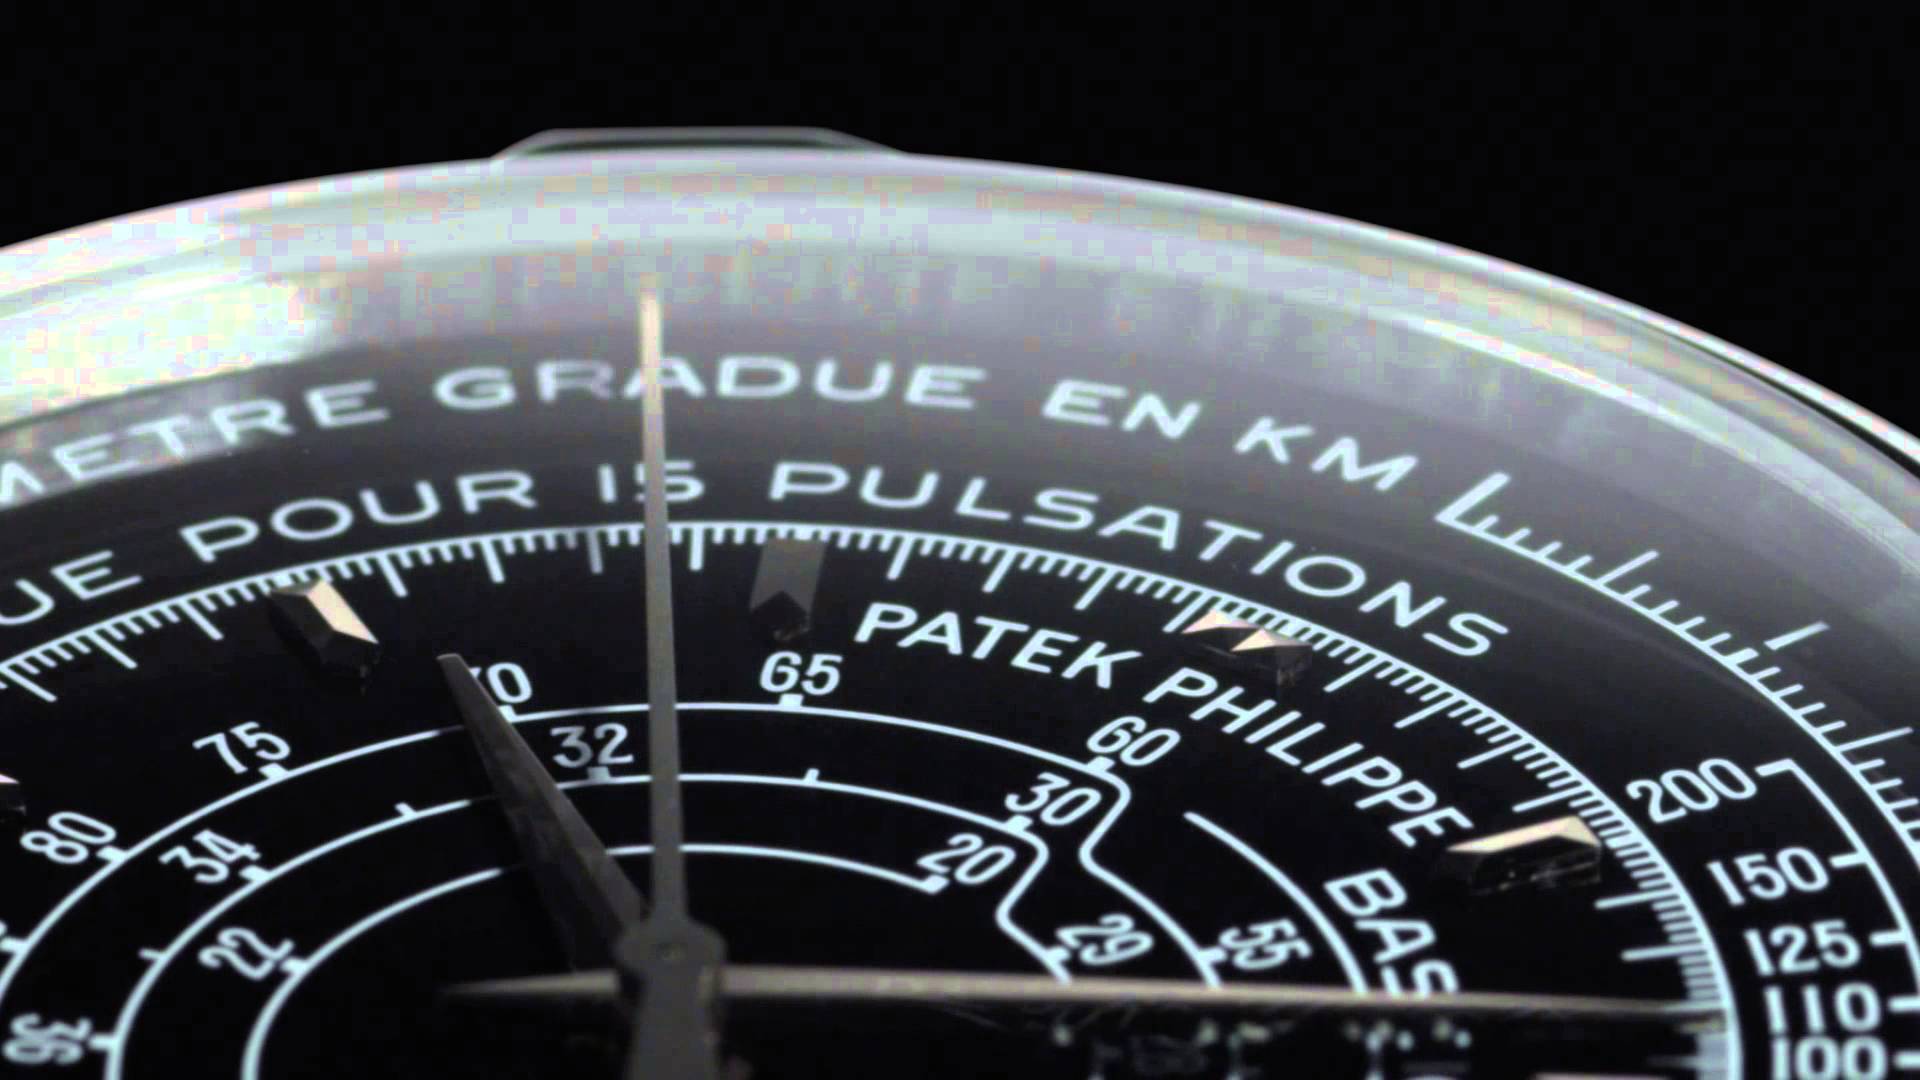 Patek Philippe Multi Scale Chronograph Ref. 5975